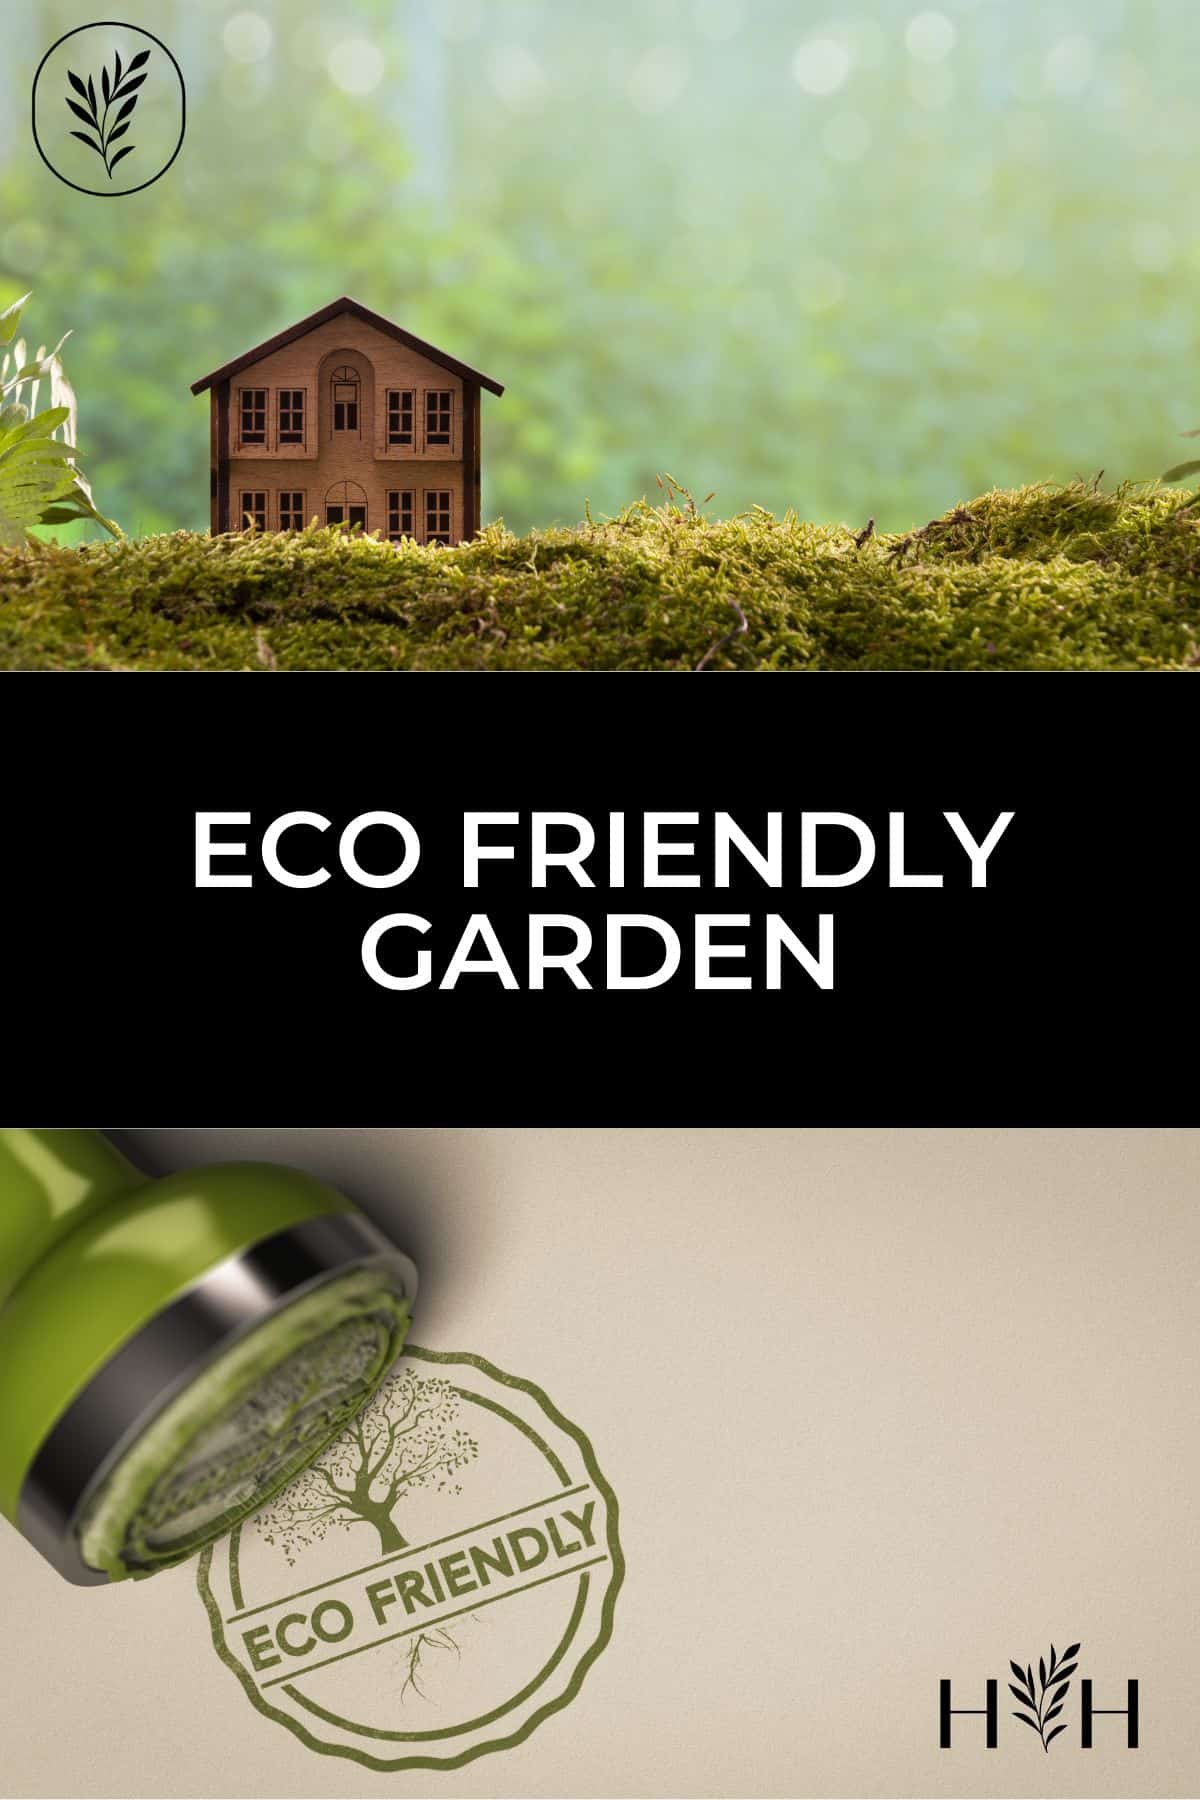 Eco friendly garden via @home4theharvest